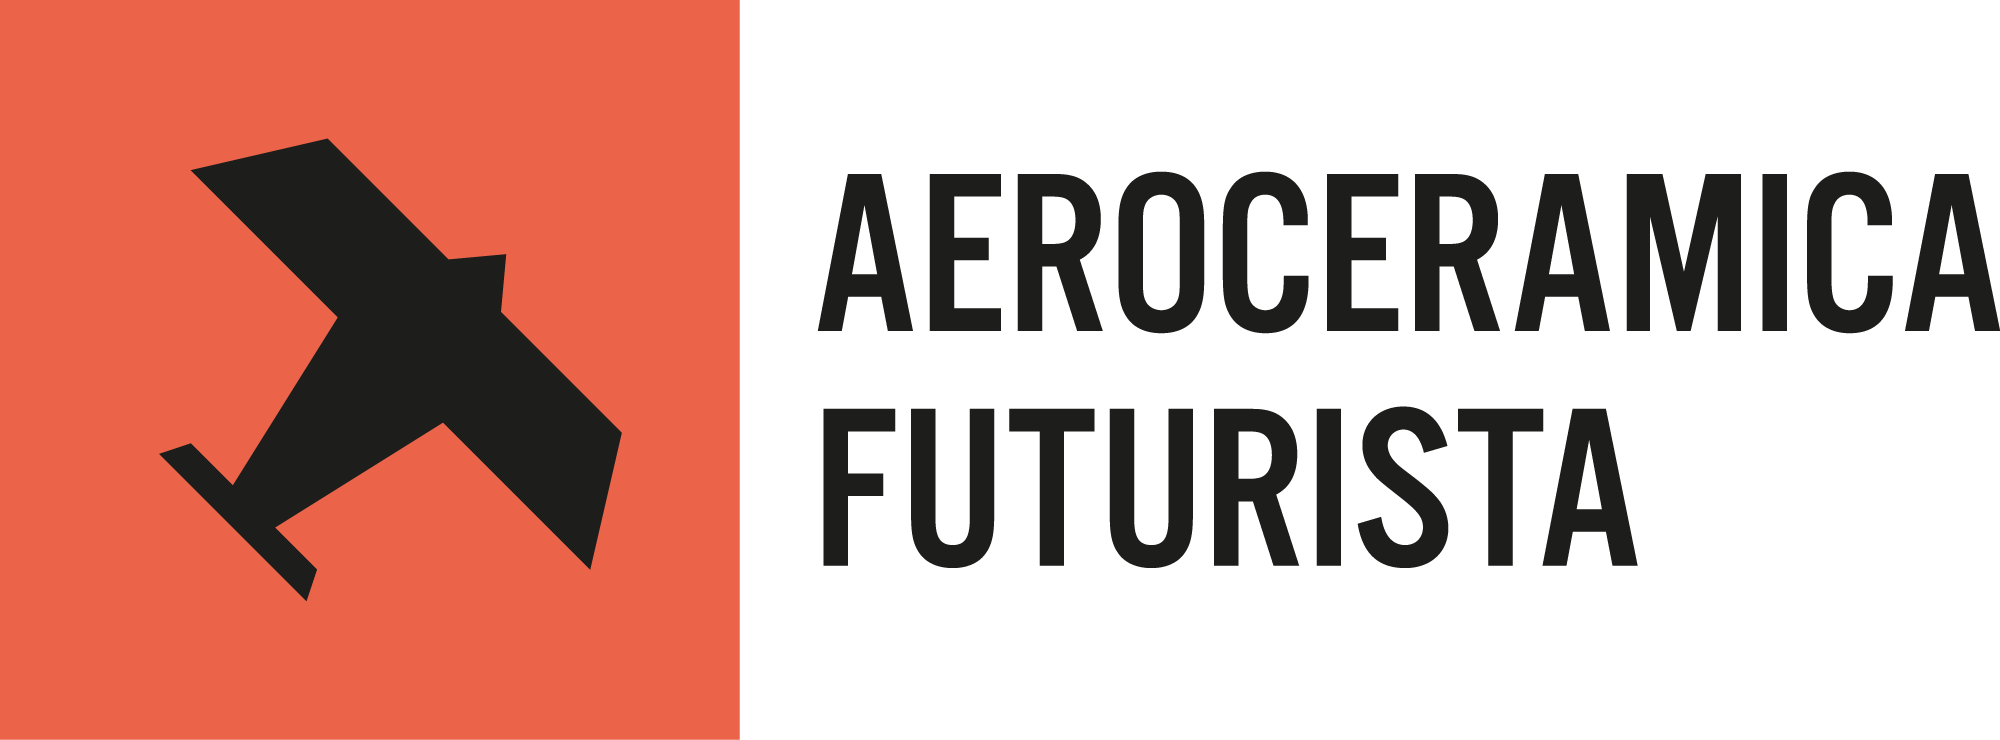 Aeroceramica Futurista - Logo ITA